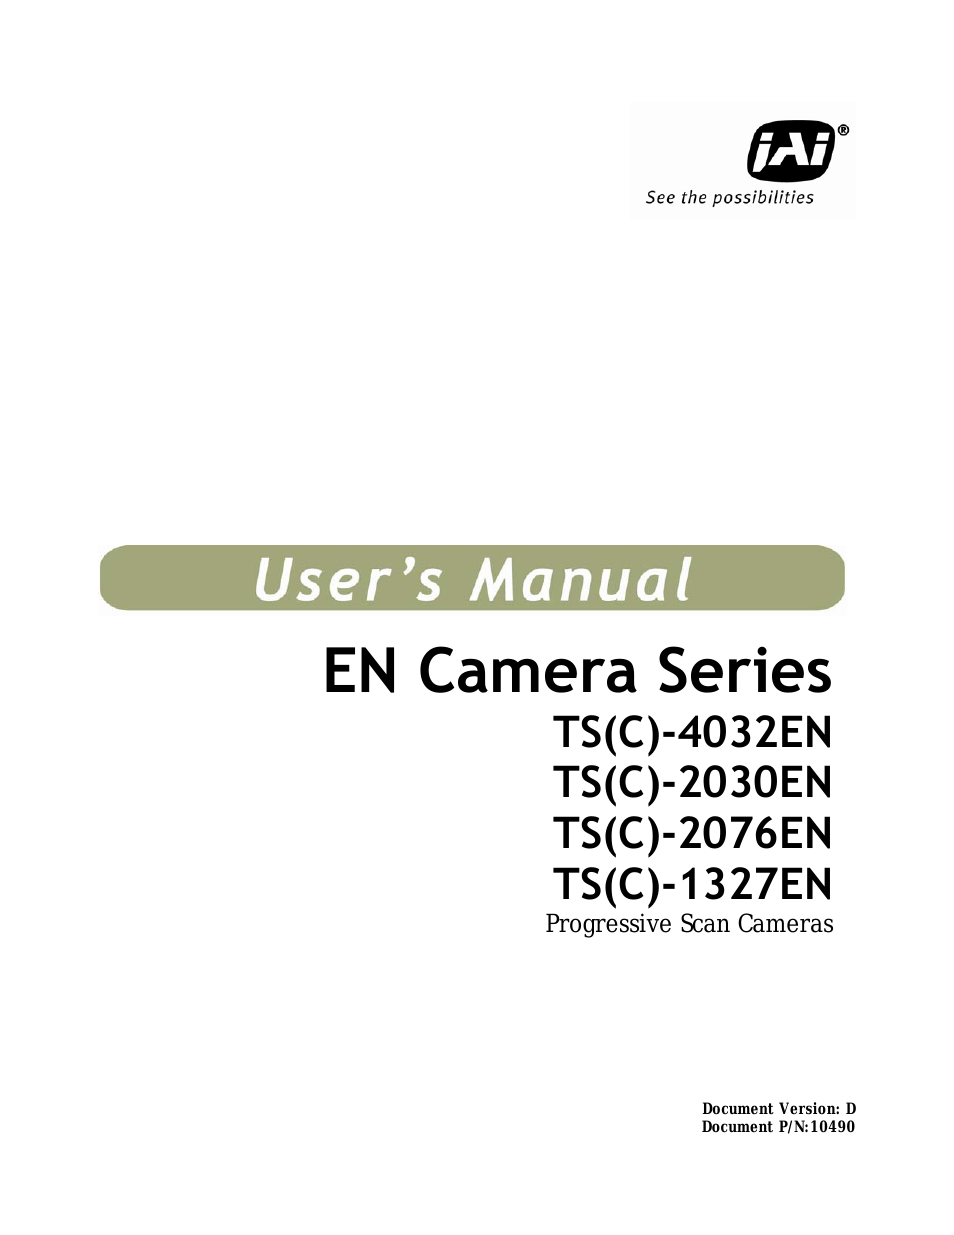 EN Series Cameras TS(C)-1327EN